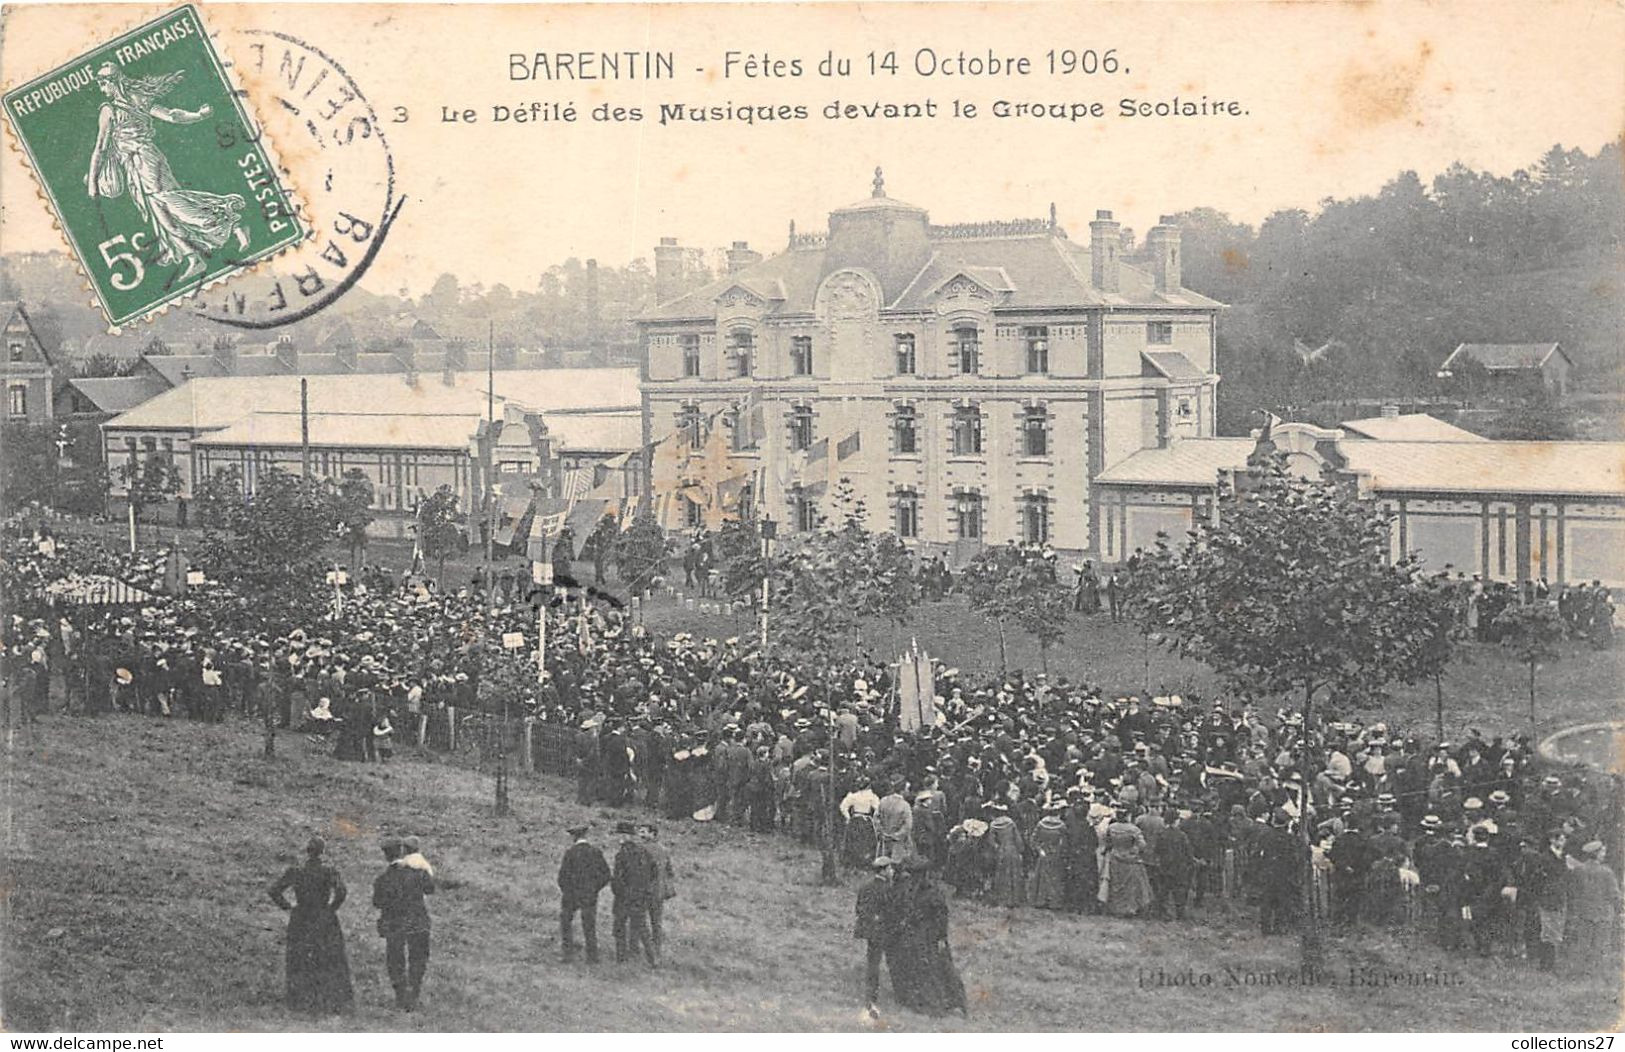 76-BARENTIN- FÊTES DU 14 OCTOBRE 1906, LE DÉFILE DES MUSIQUE DEVANT LE GROUPE SCOLAIRE - Barentin